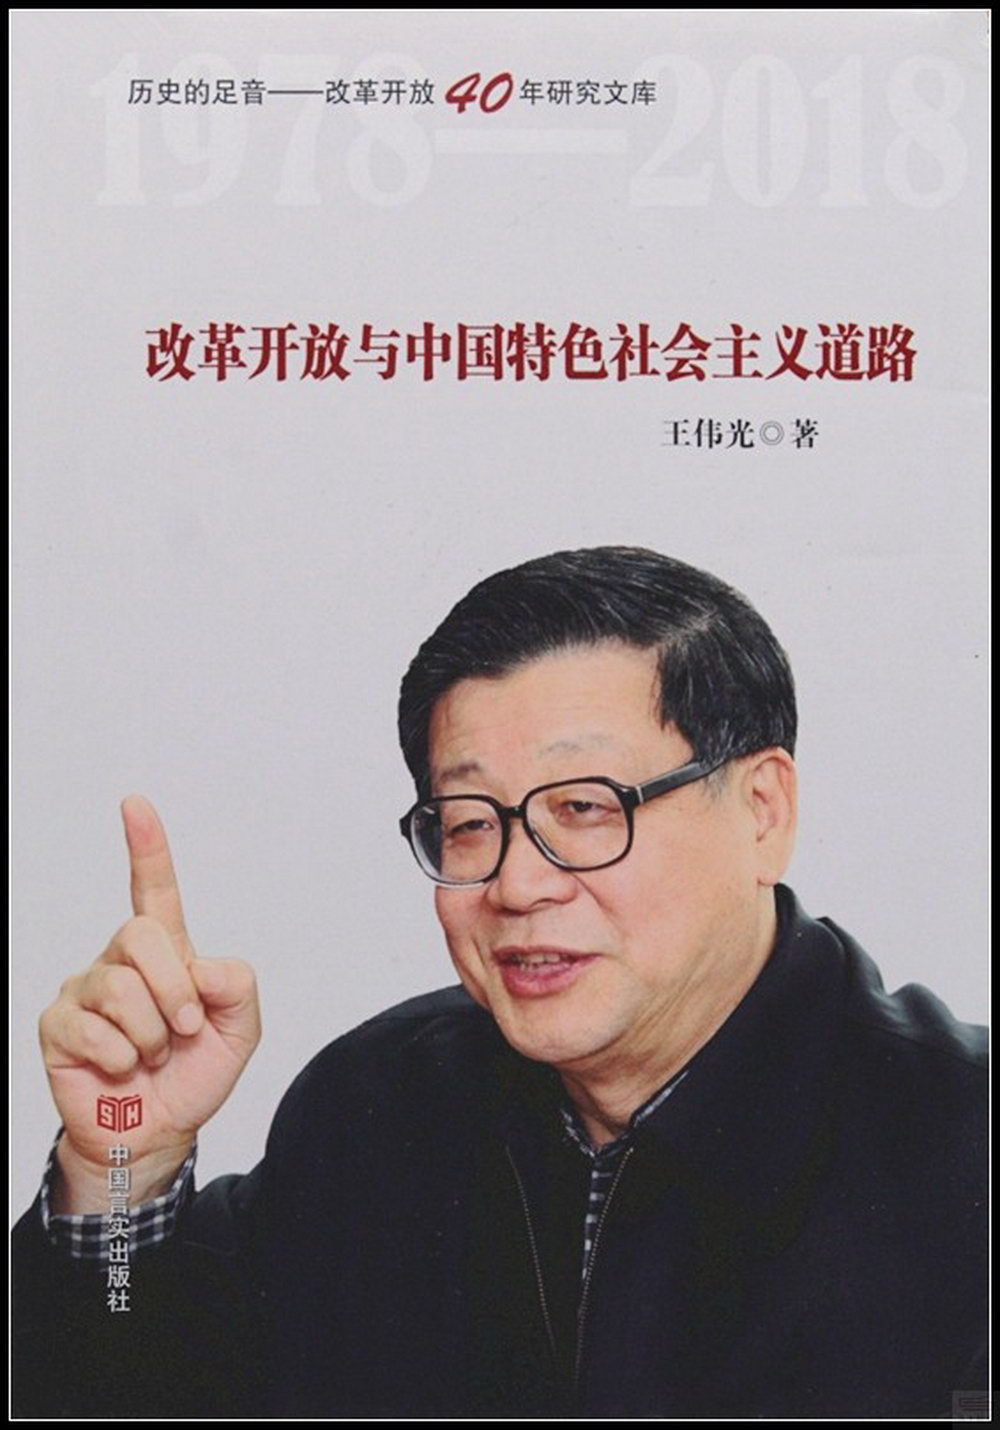 改革開放與中國特色社會主義道路